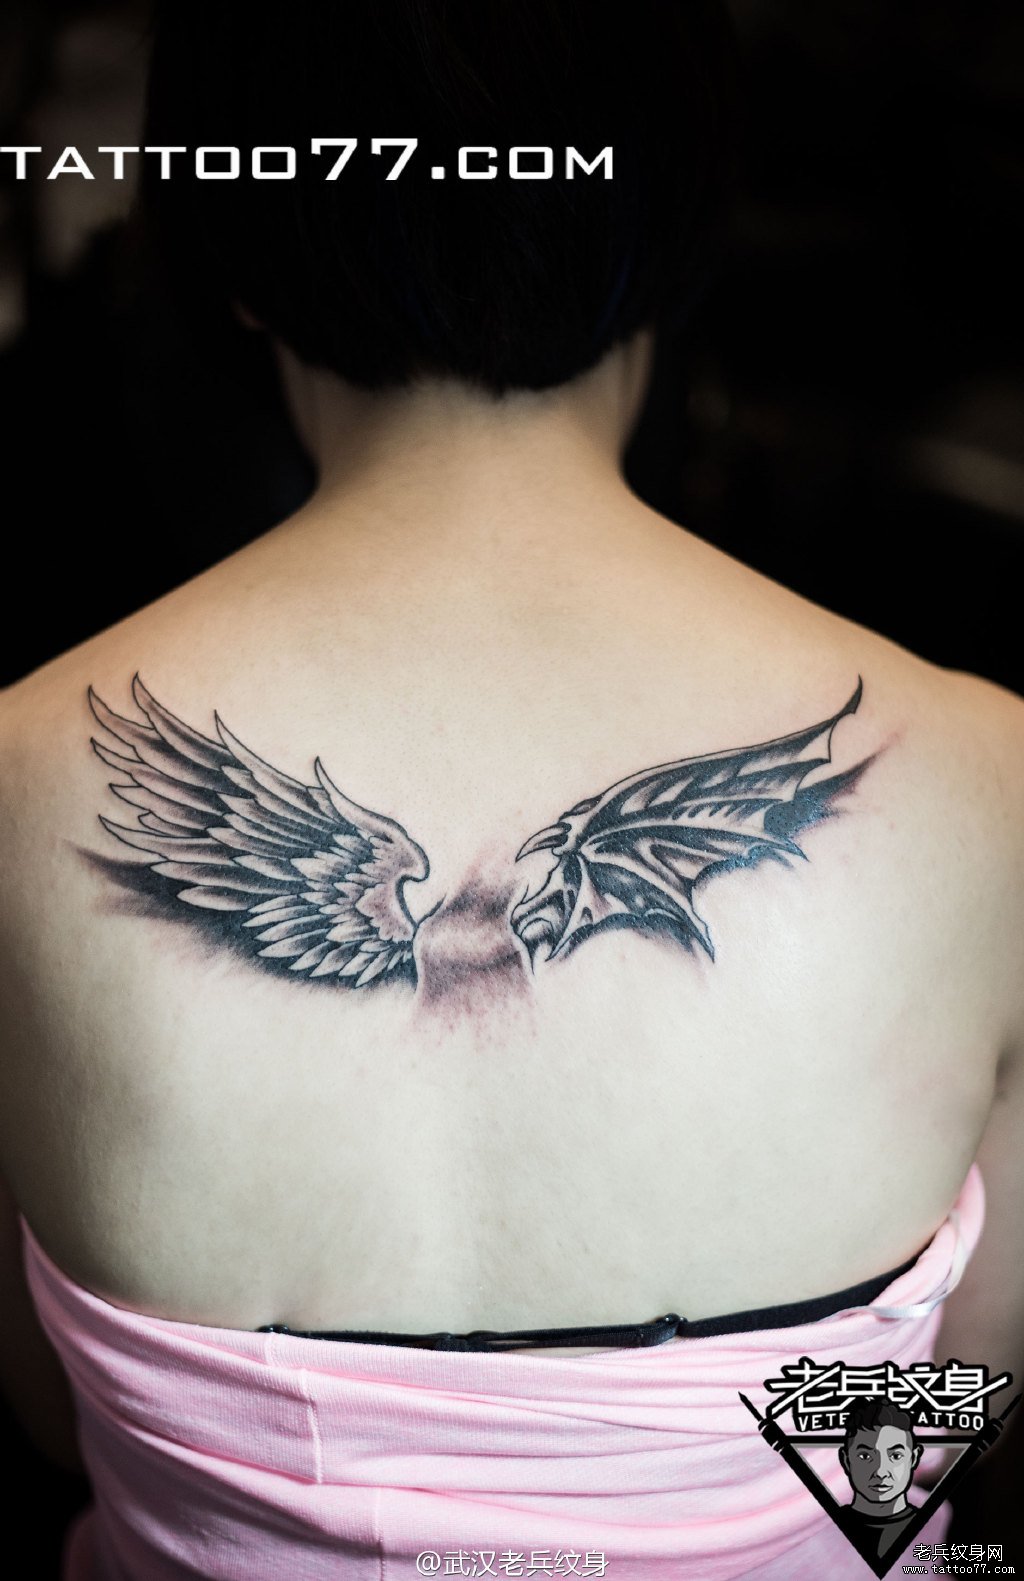 纹身图案大全          0 喜欢         浏览           后背翅膀